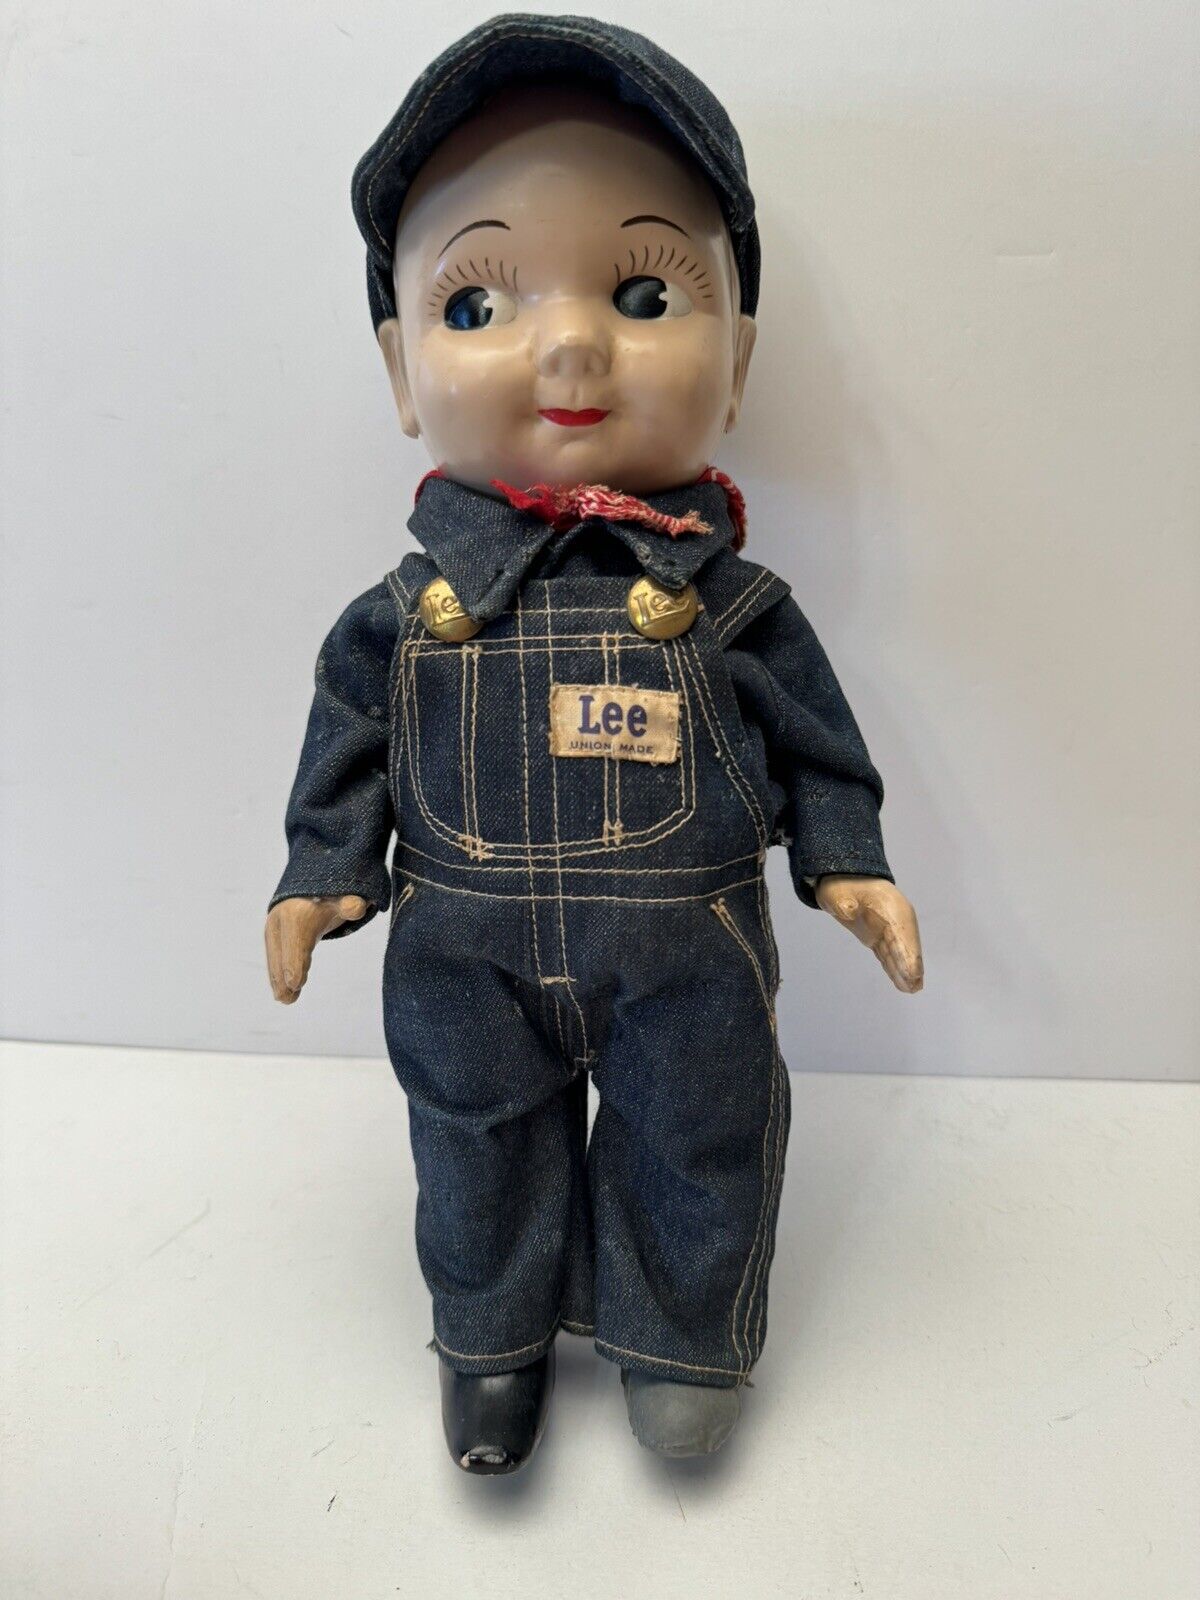 Vintage 1950s Buddy Lee Doll Lee Jeans Denim Original Railroad Engineer